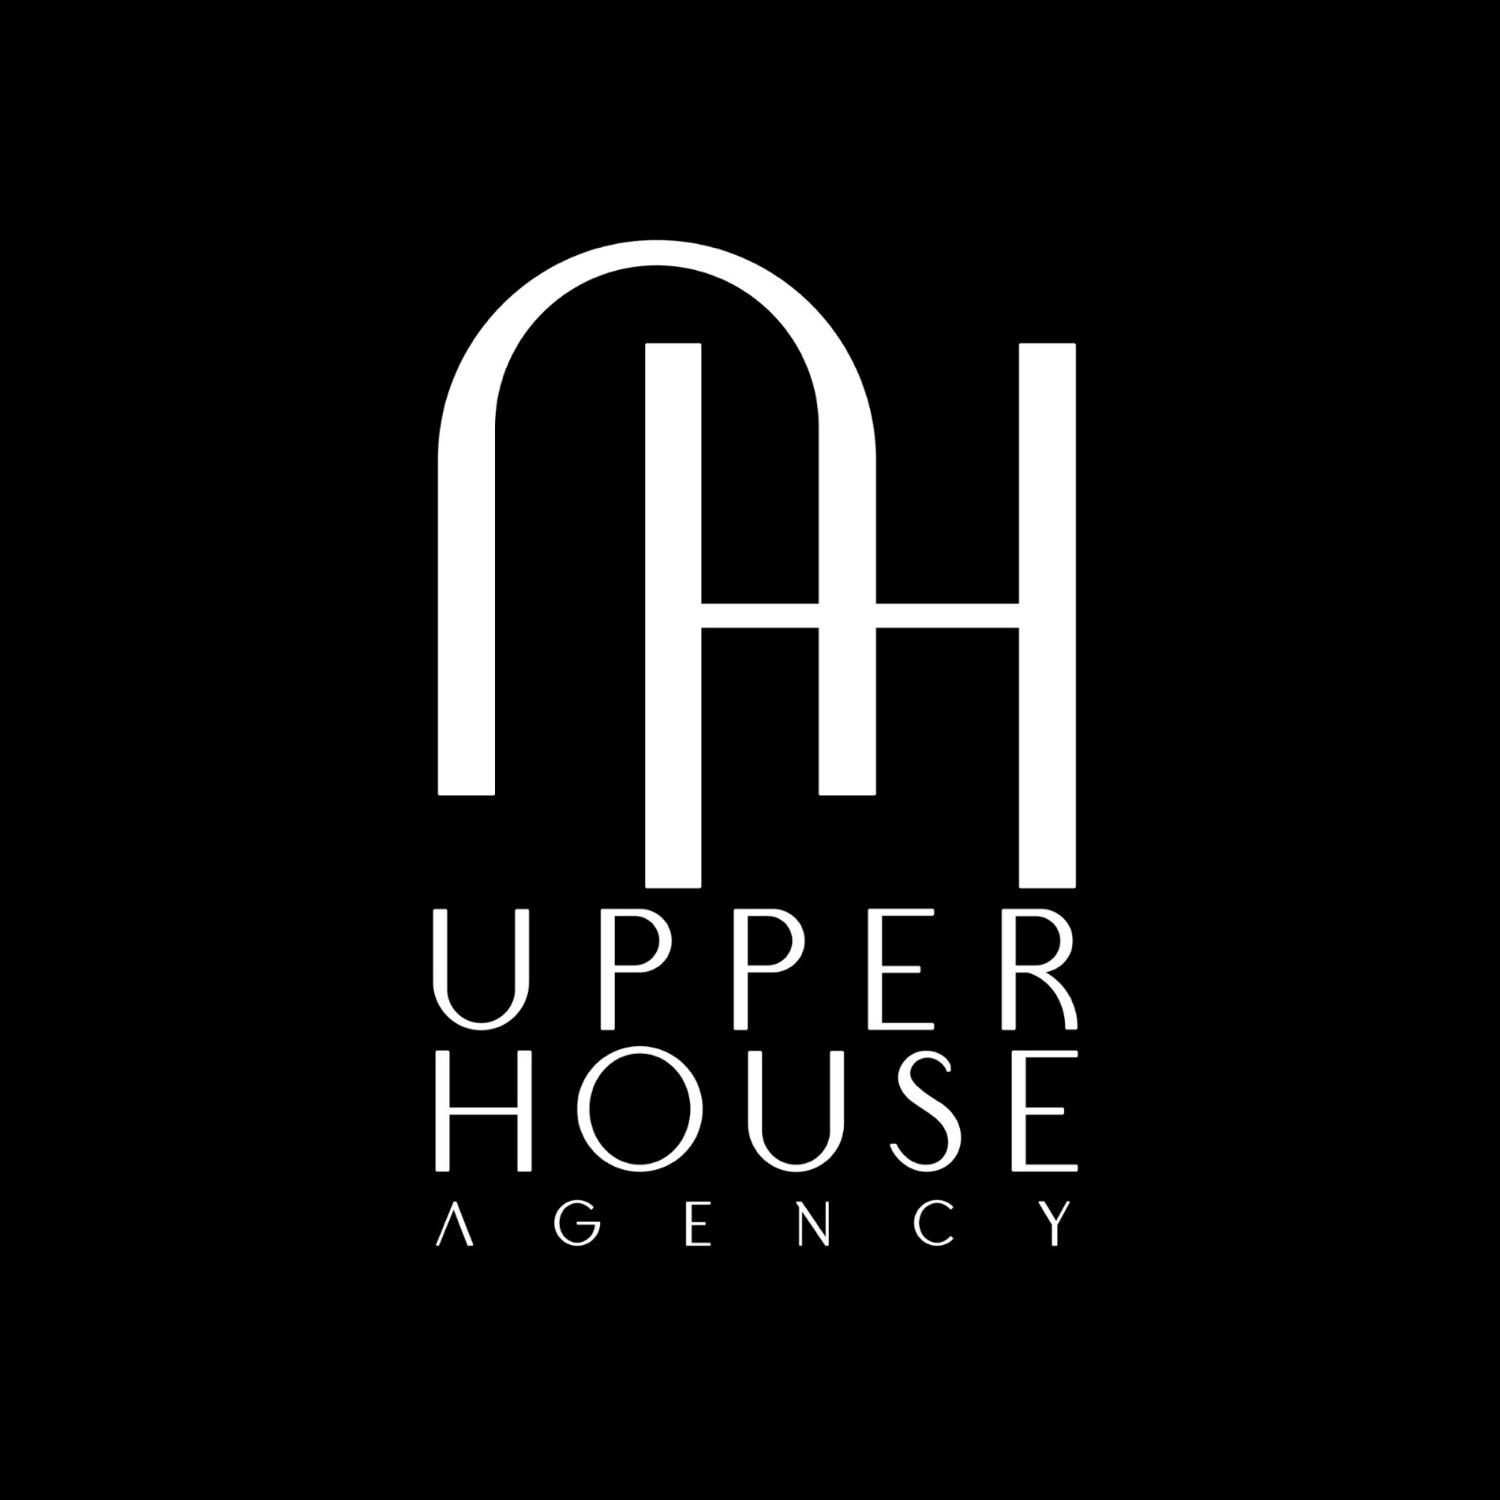 Upper house Agency